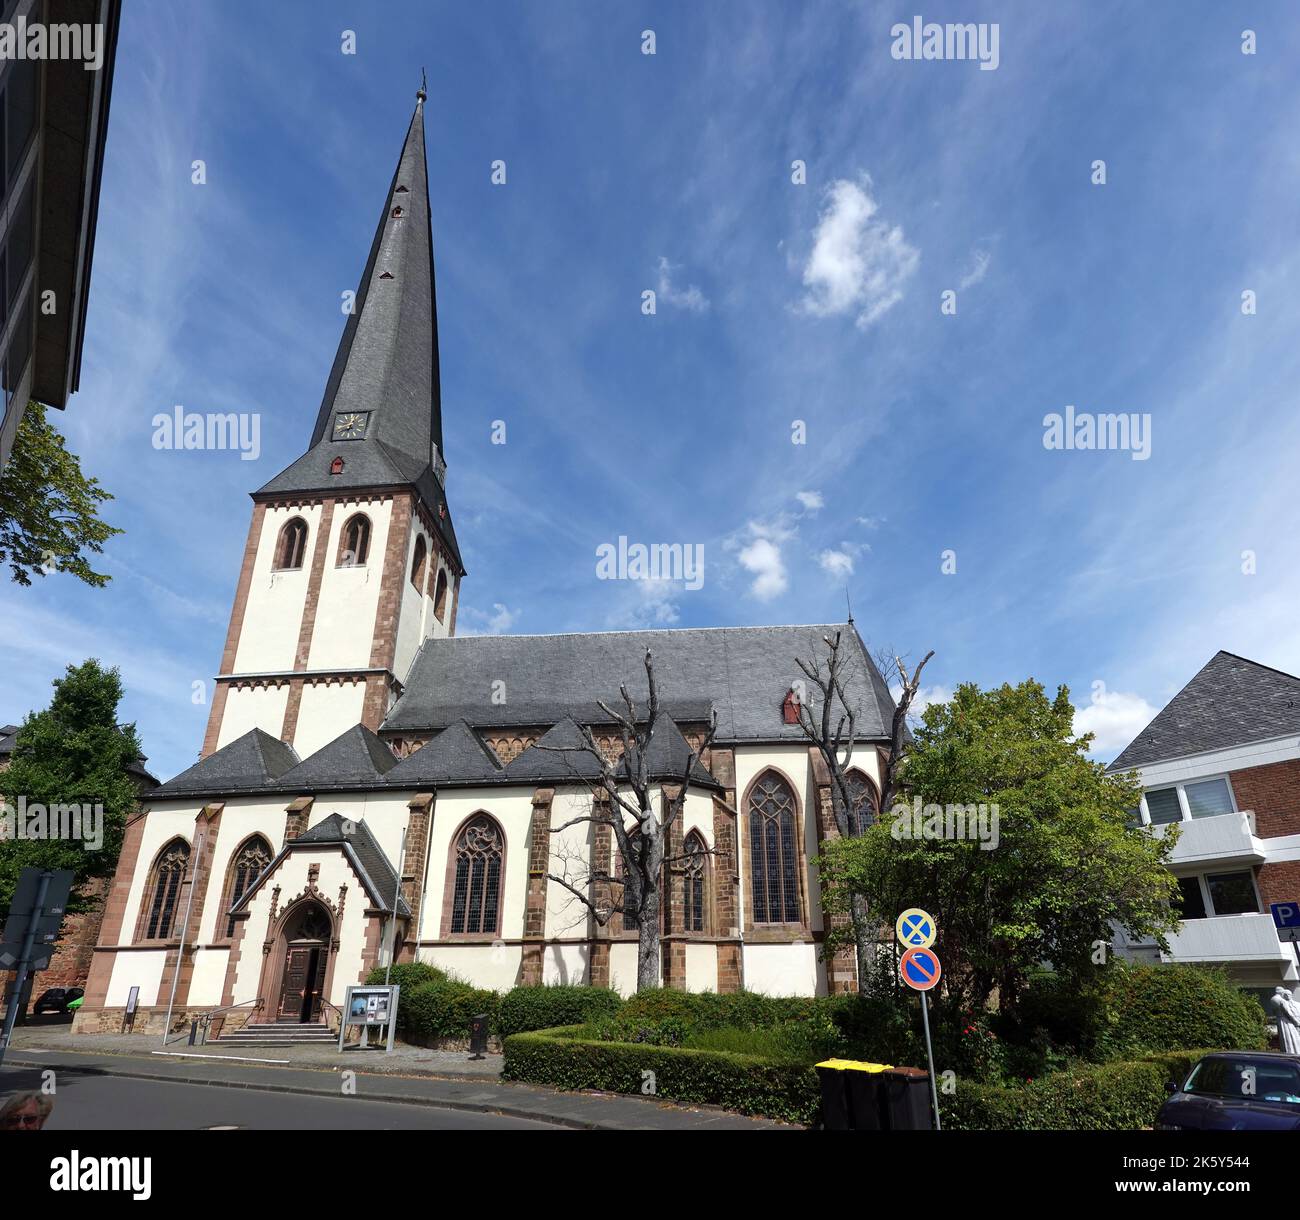 Katholische Pfarrkirche St. Martin, Nordrhein-Westfalen, Deutschland, Euskirchen Foto Stock